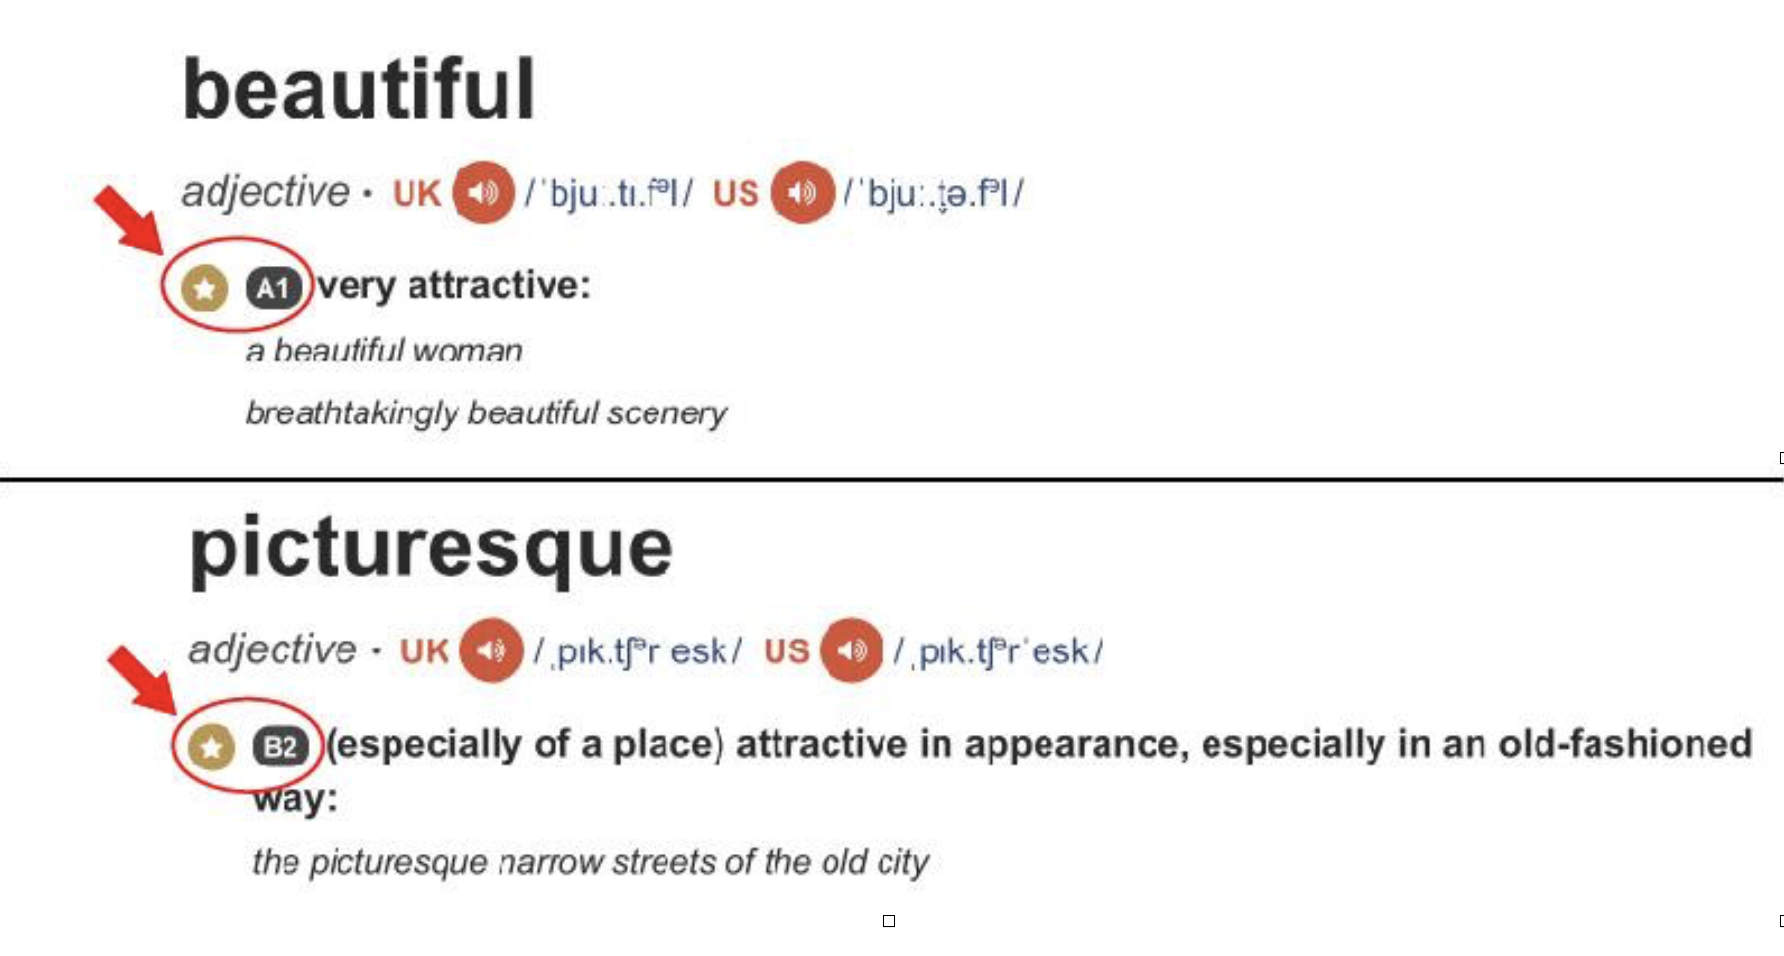 Người mới học tiếng Anh nên học từ “beautiful” vì từ này dành cho trình độ A1, thay vì từ “picturesque” vì từ này ở trình độ B2.